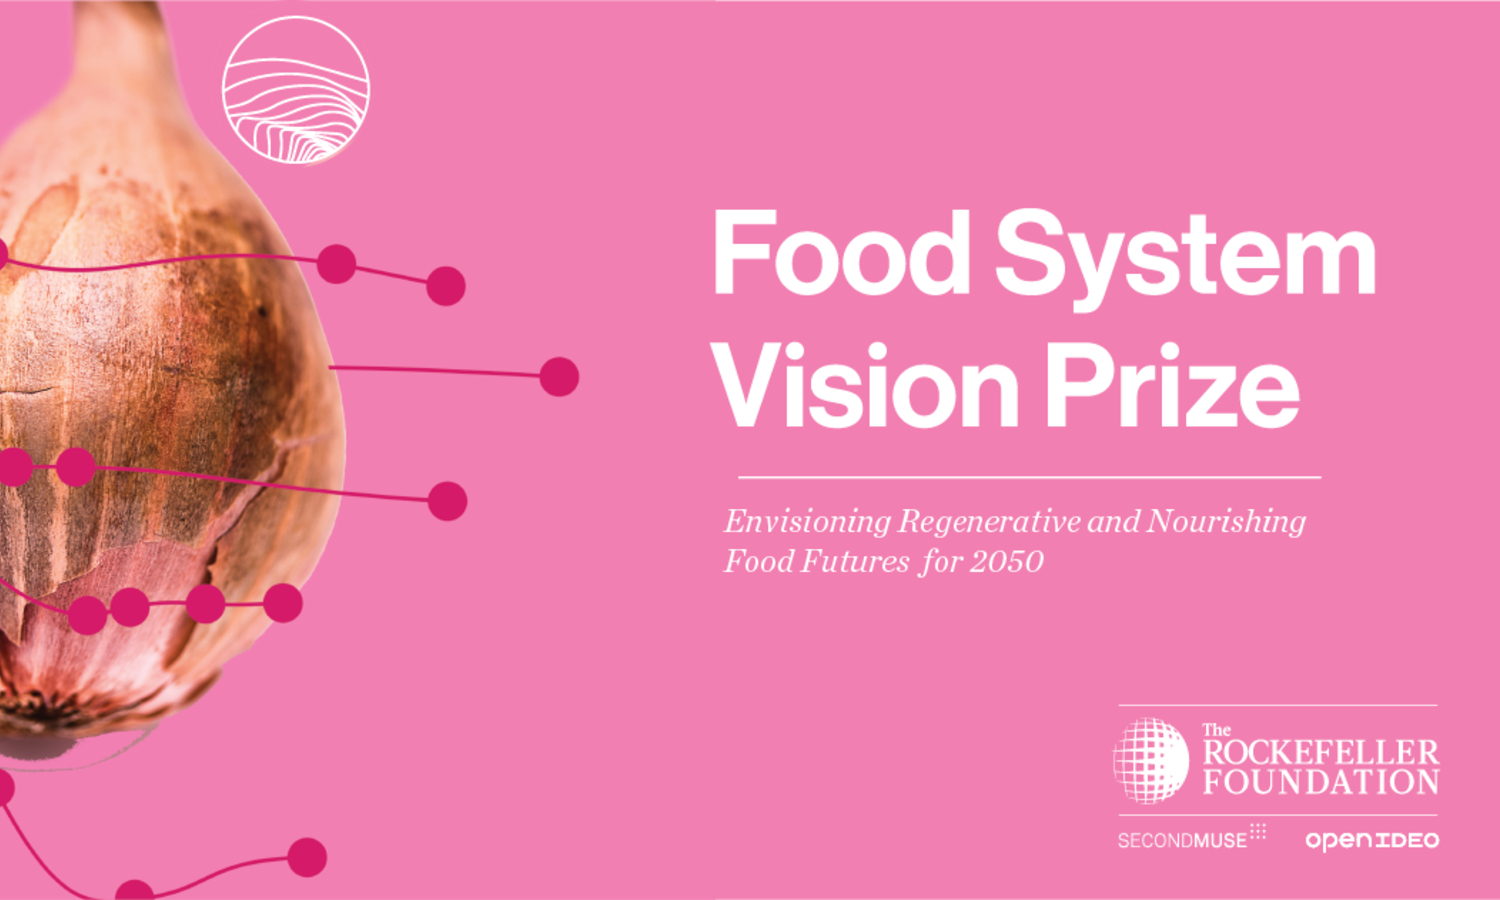 奖,洛克菲勒基金会发起,将支持鼓舞人心的愿景的食物系统可以在2050年。